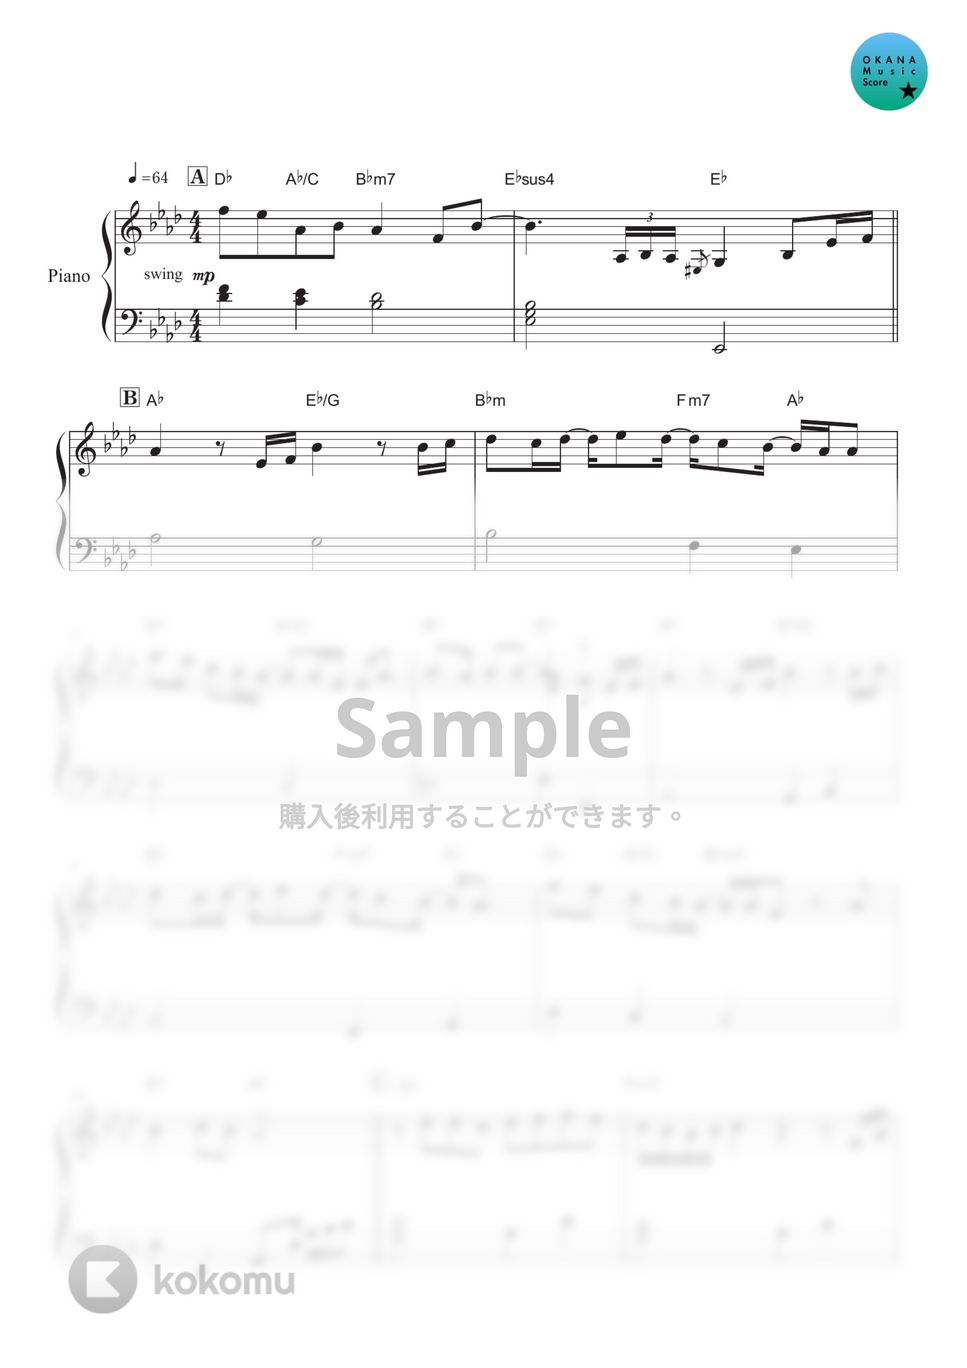 清水翔太 - 花束のかわりにメロディーを(Short ver.) (ピアノ初級/Short/歌詞・コード付) by OKANA